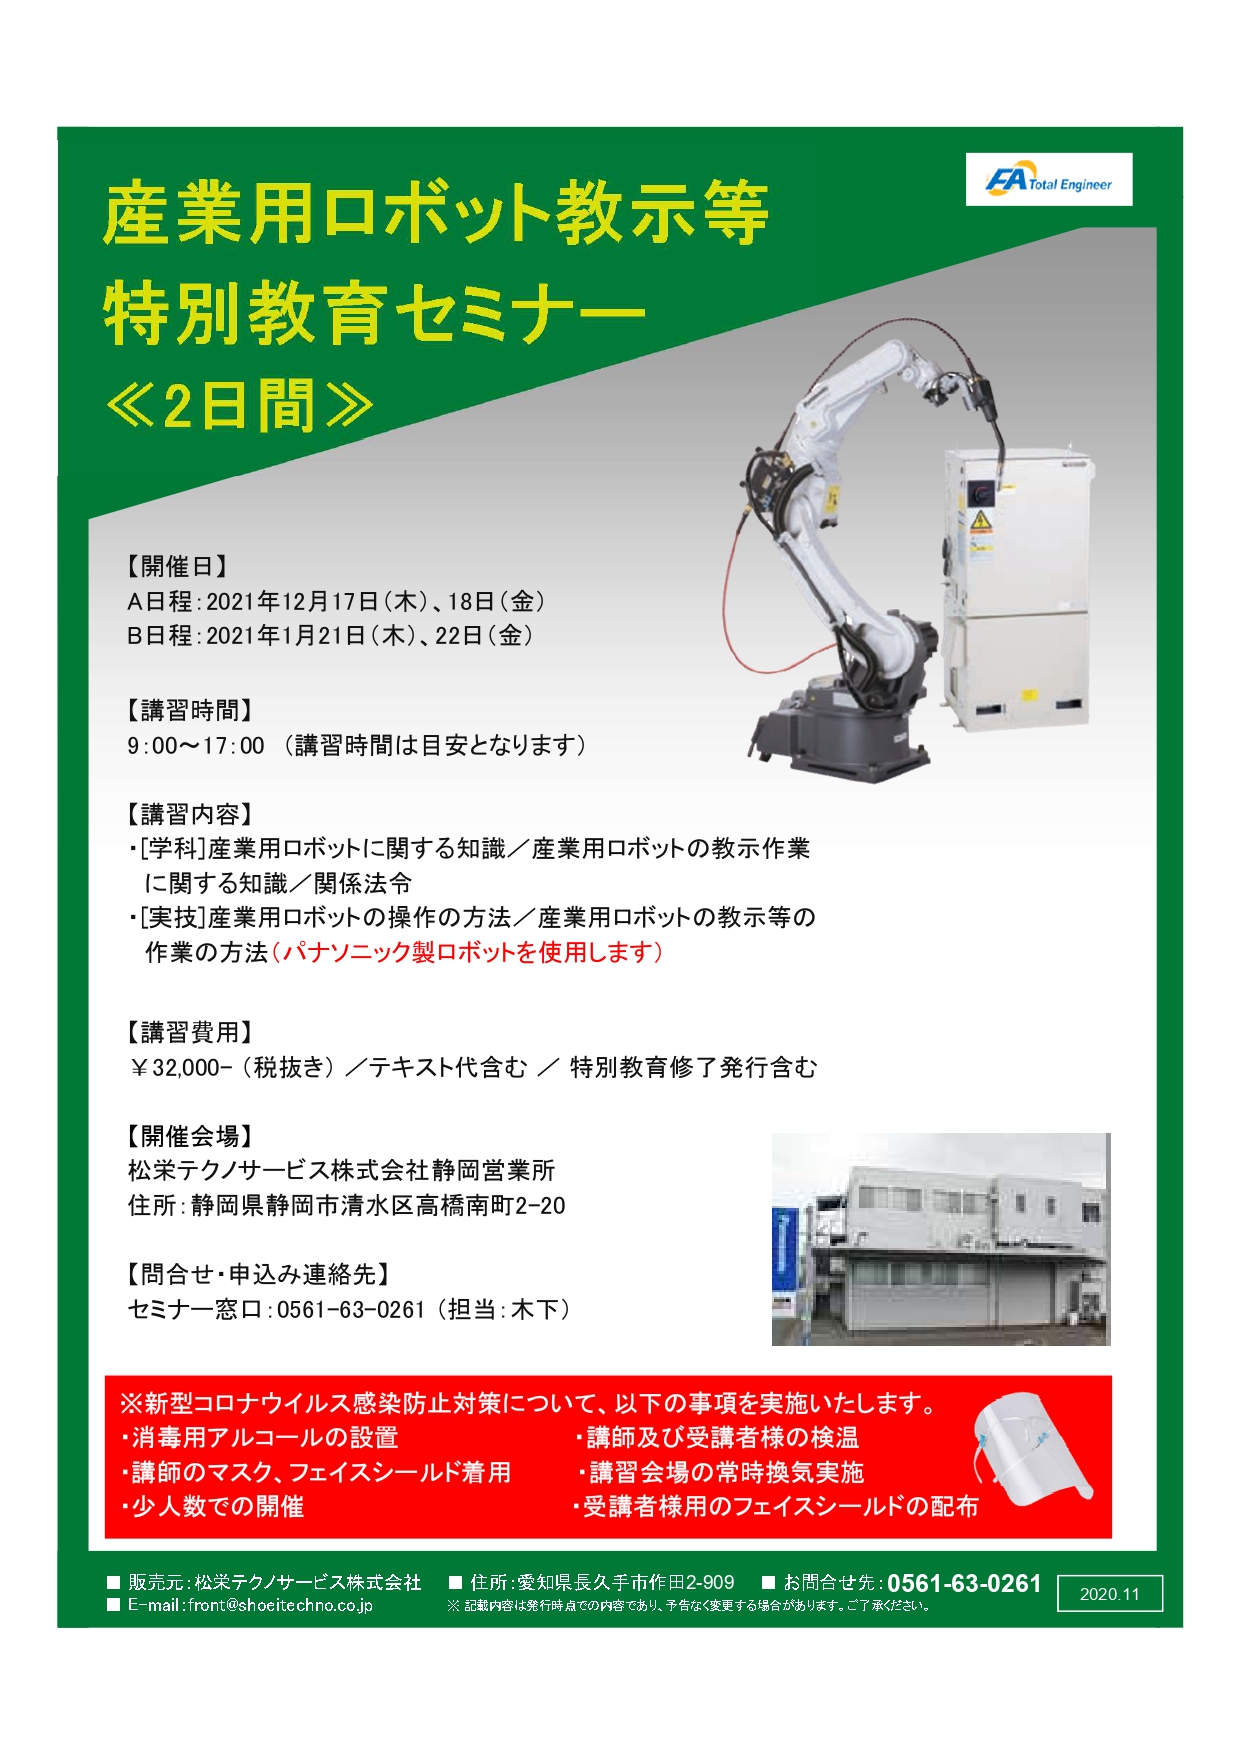 【静岡開催】産業用ロボット特別教育開催のお知らせ